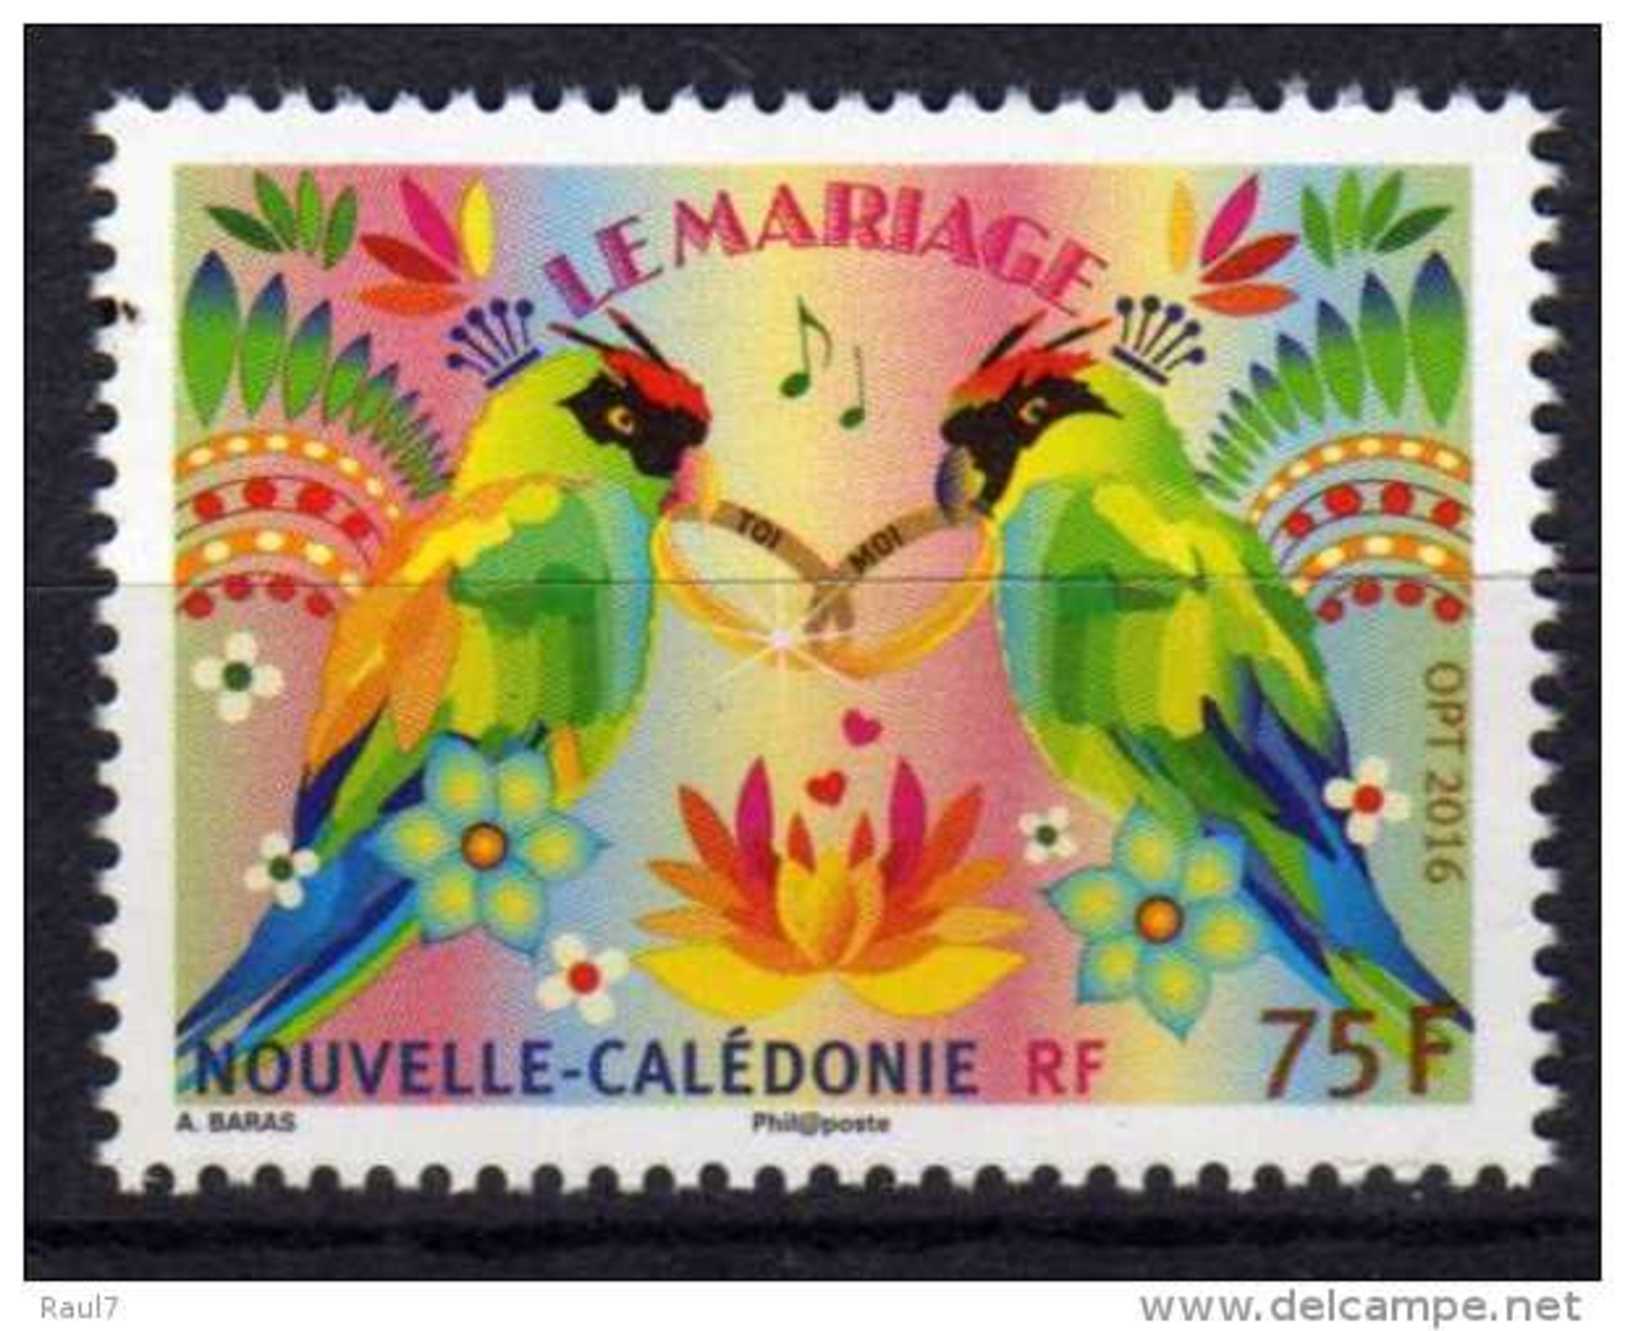 Nouvelle-Calédonie 2016 - Perroquets, Le Mariage - 1val Neufs // Mnh - Nuovi